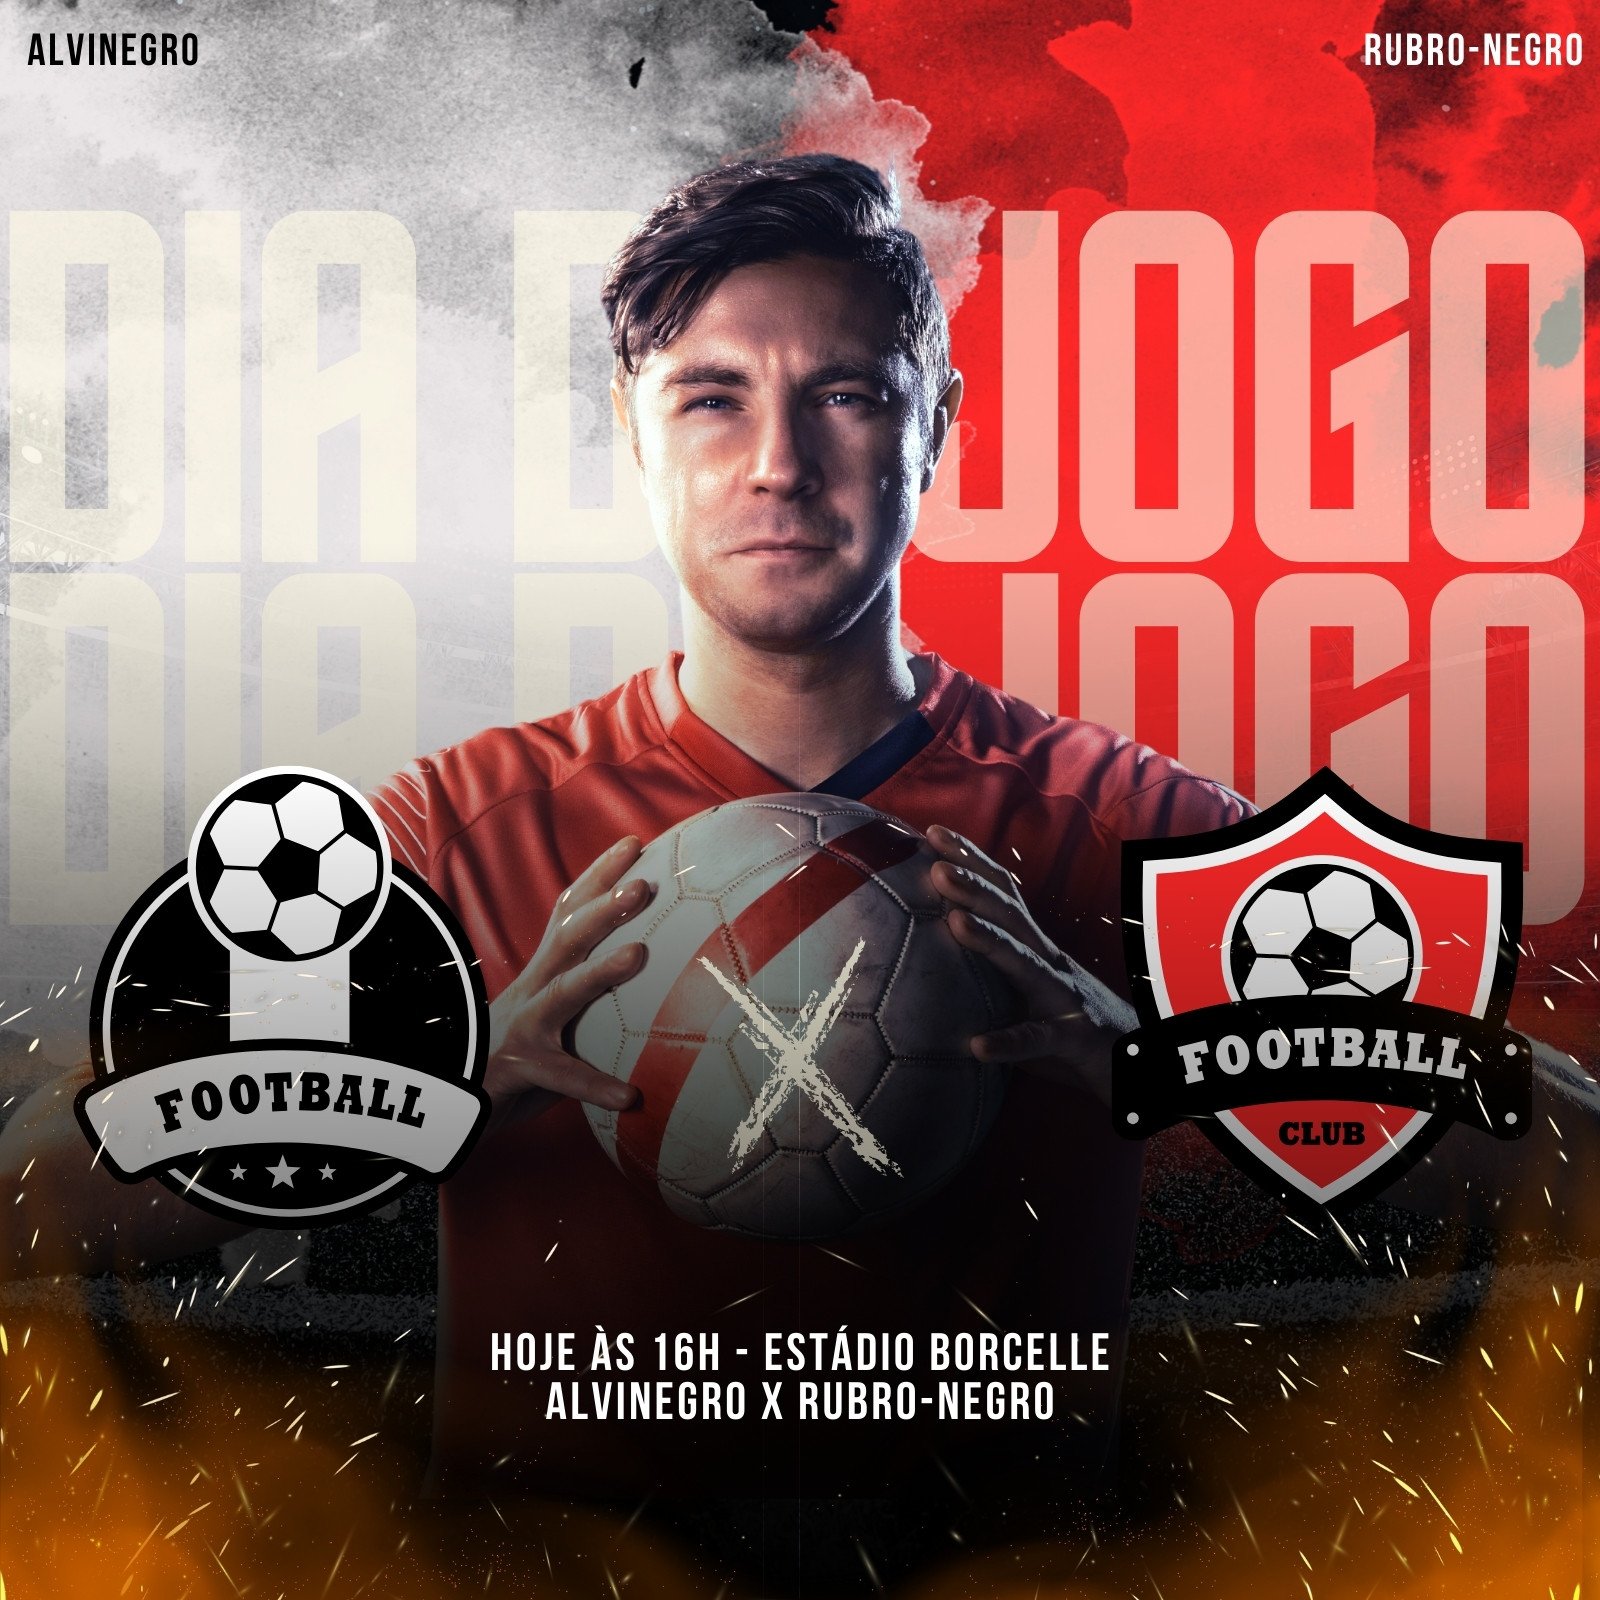 FLYER ESPORTIVO - Match day - Jogo de futebol  Sports design, Photo and  video, Instagram photo